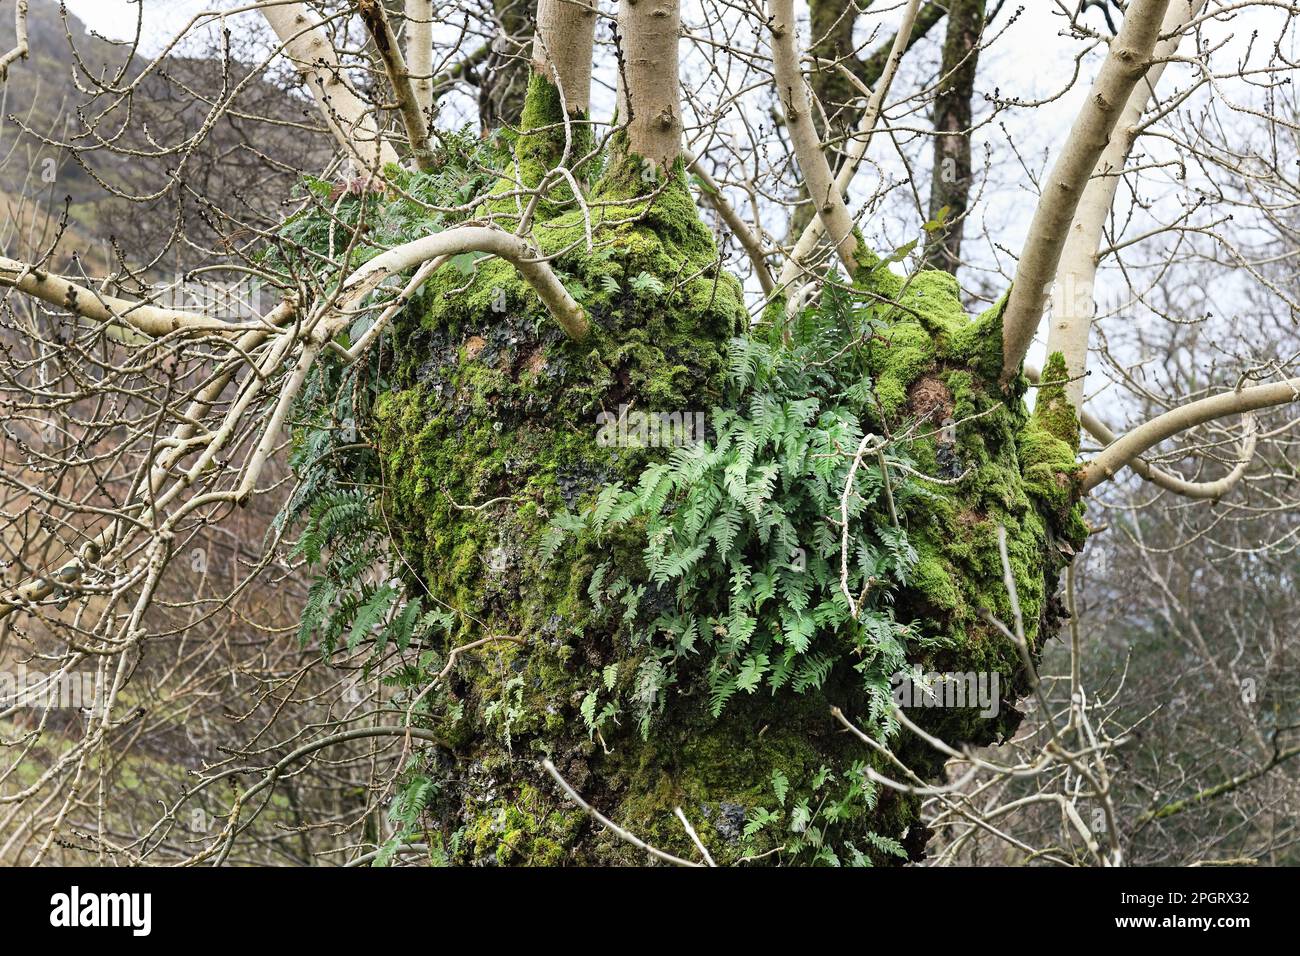 Bewachsener, reifer Aschebaum (Fraxinus excelsior), bedeckt mit Farnen, Flechten und Mosses. Solche Bäume schaffen einen Lebensraum für viele Arten von Fauna, wirbellose Stockfoto